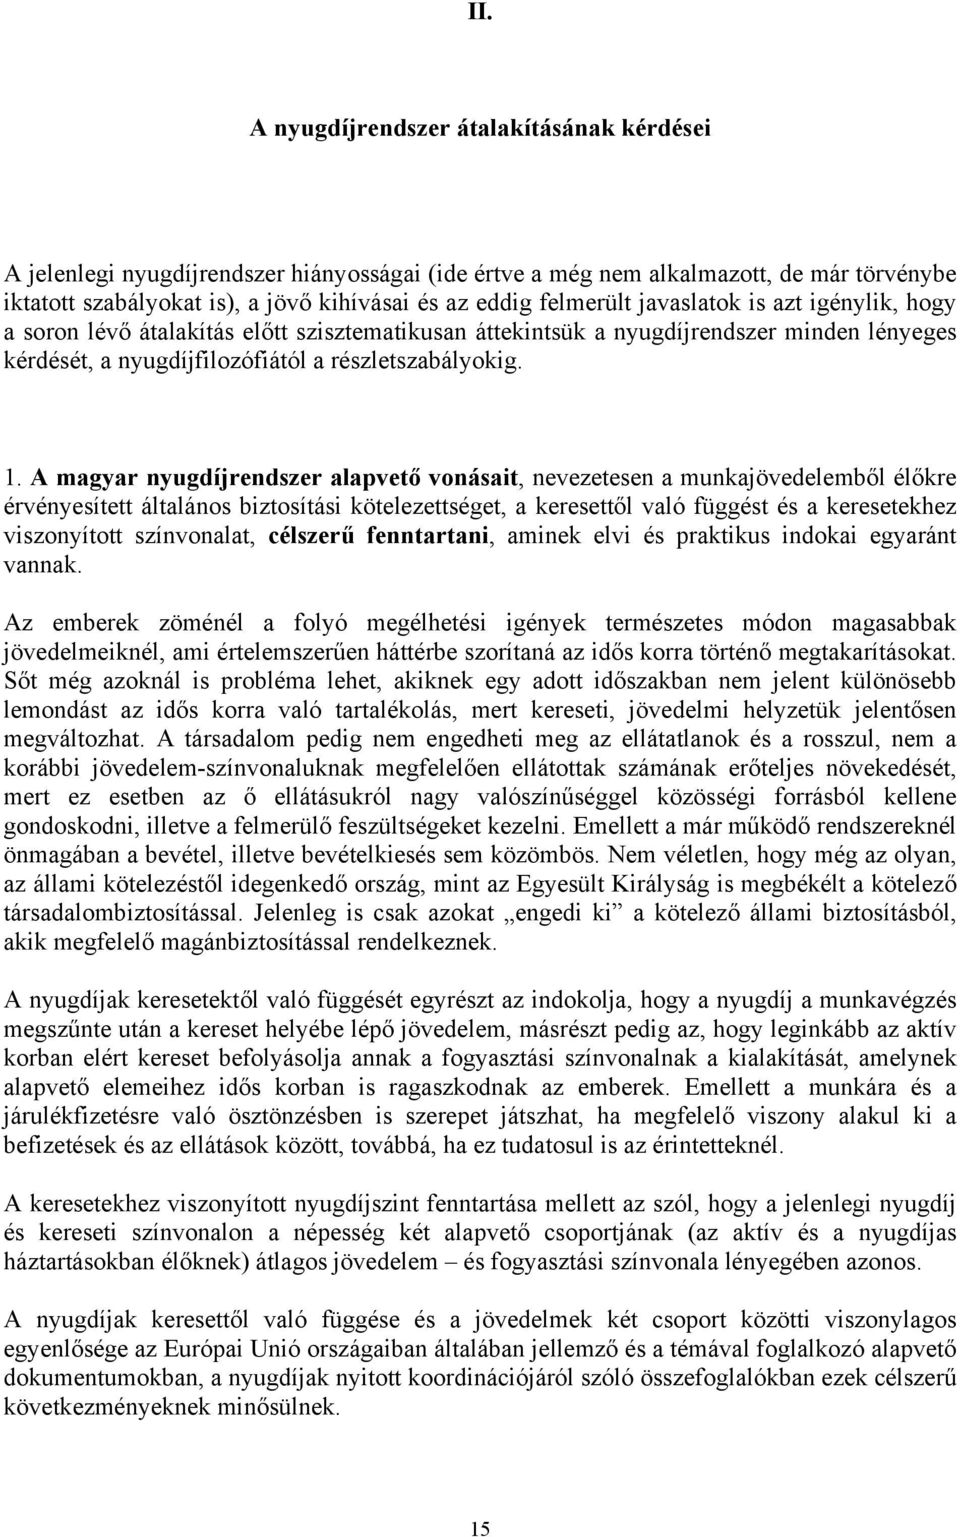 A magyar nyugdíjrendszer alapvető vonásait, nevezetesen a munkajövedelemből élőkre érvényesített általános biztosítási kötelezettséget, a keresettől való függést és a keresetekhez viszonyított